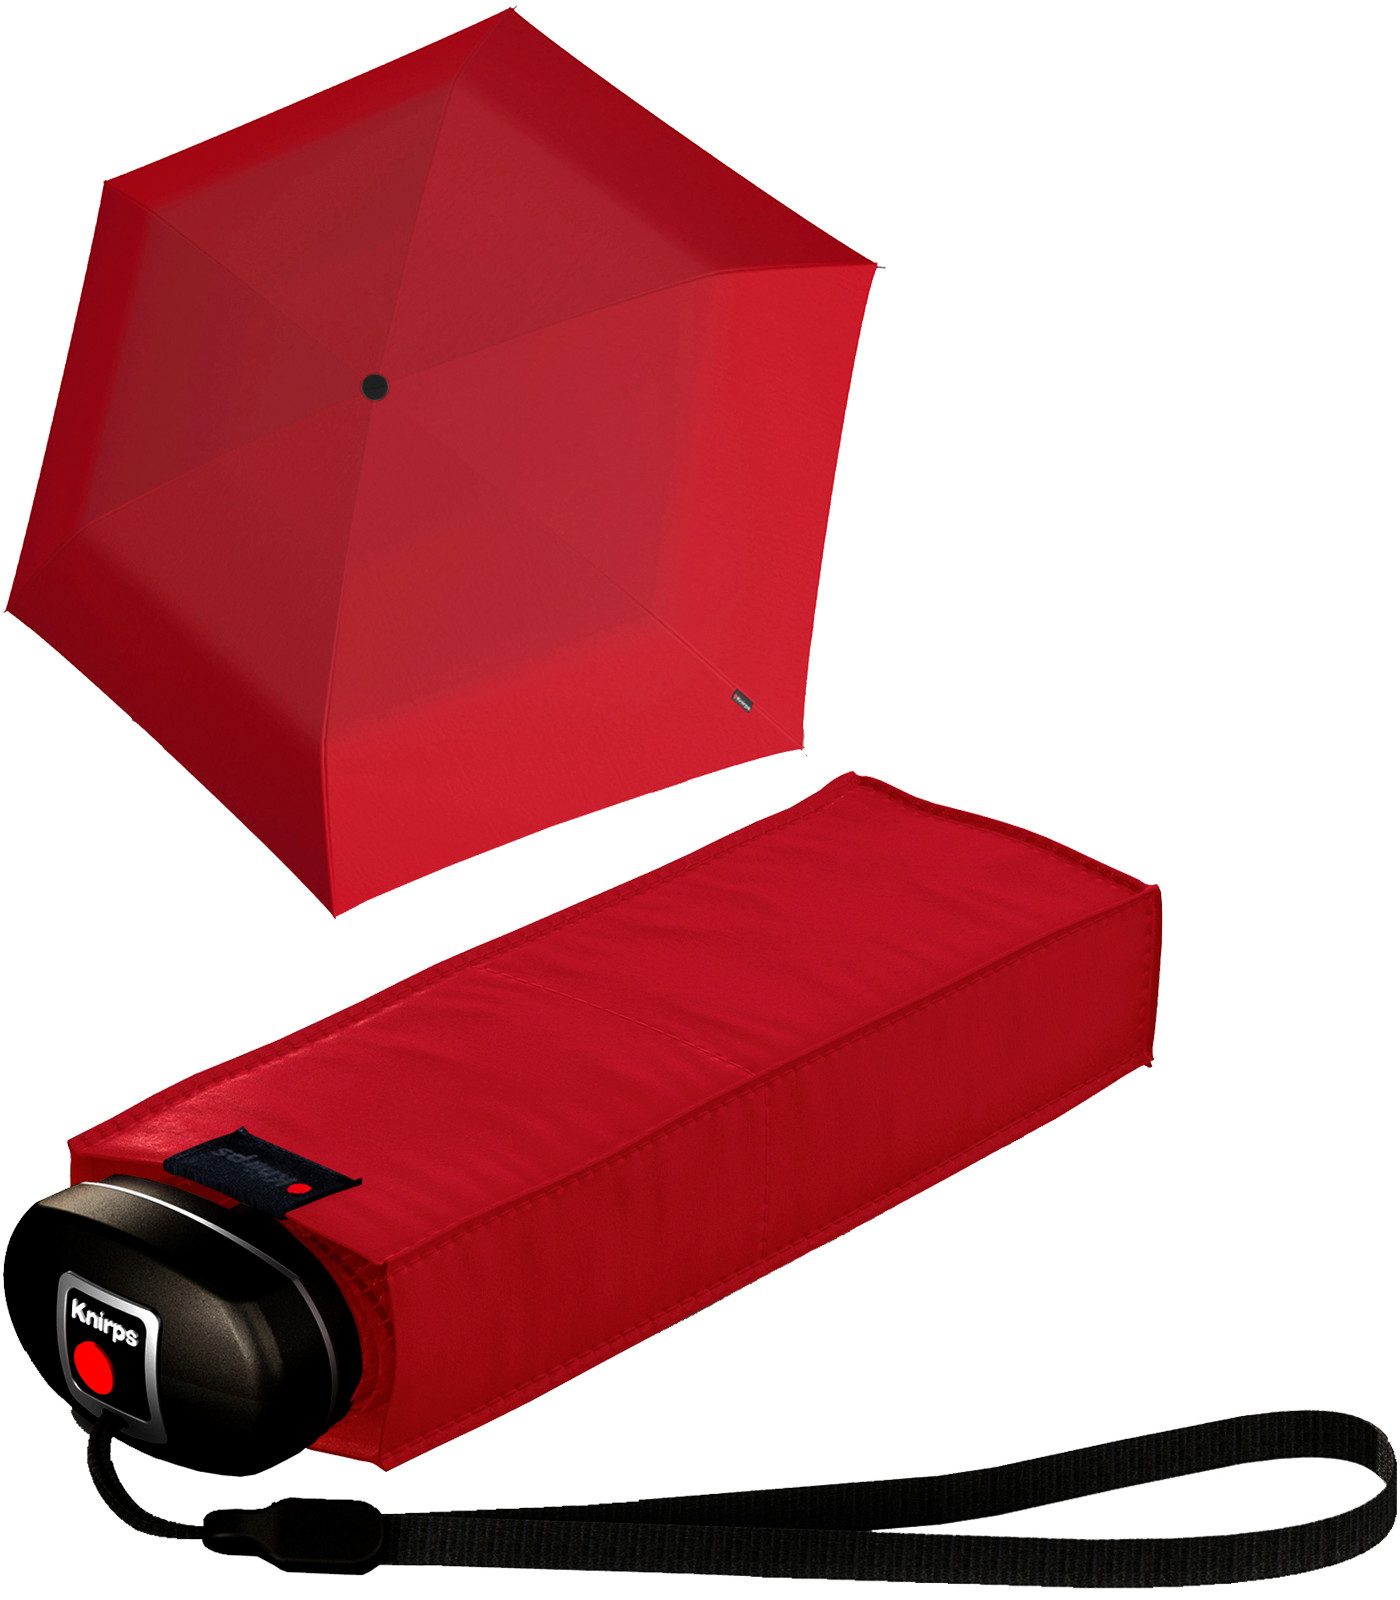 Knirps® Taschenregenschirm Mini-Schirm Travel klein leicht kompakt, der zuverlässige Begleiter für jede Tasche